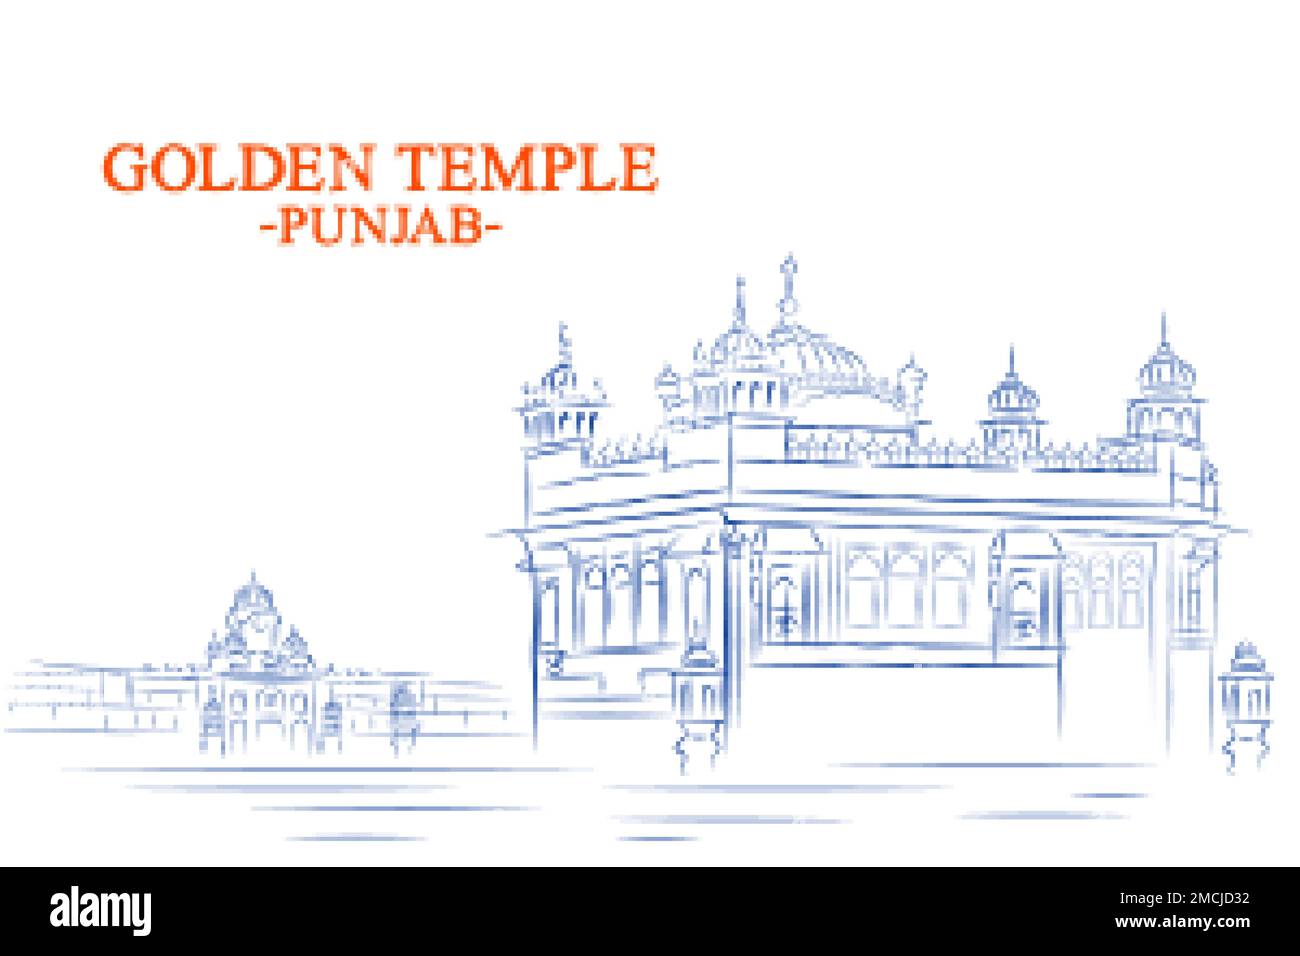 Temple d'Or Harmandir Sahiba a gurdwara dans la ville d'Amritsar, Punjab, Inde Illustration de Vecteur